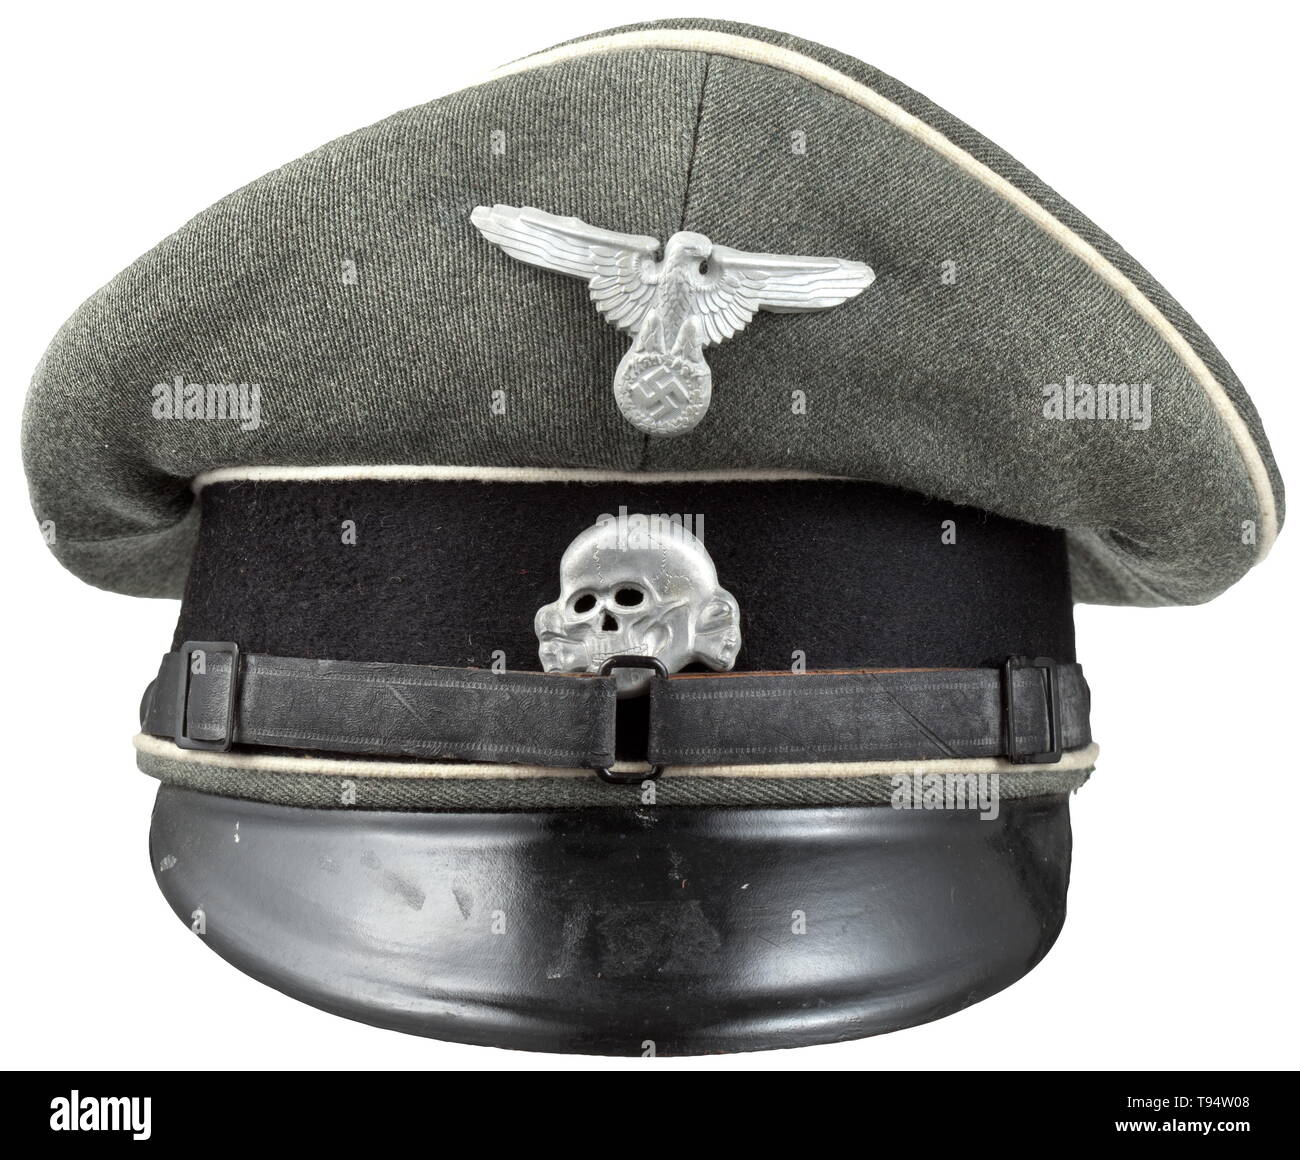 Un visor cap para alistados/suboficiales de las Waffen-SS tarde ejemplo  hechas de tela italiana saqueados de gabardine italiano (típico de la Waffen -SS posterior uniforme). Recortar la banda de paño negro, blanco, tuberías